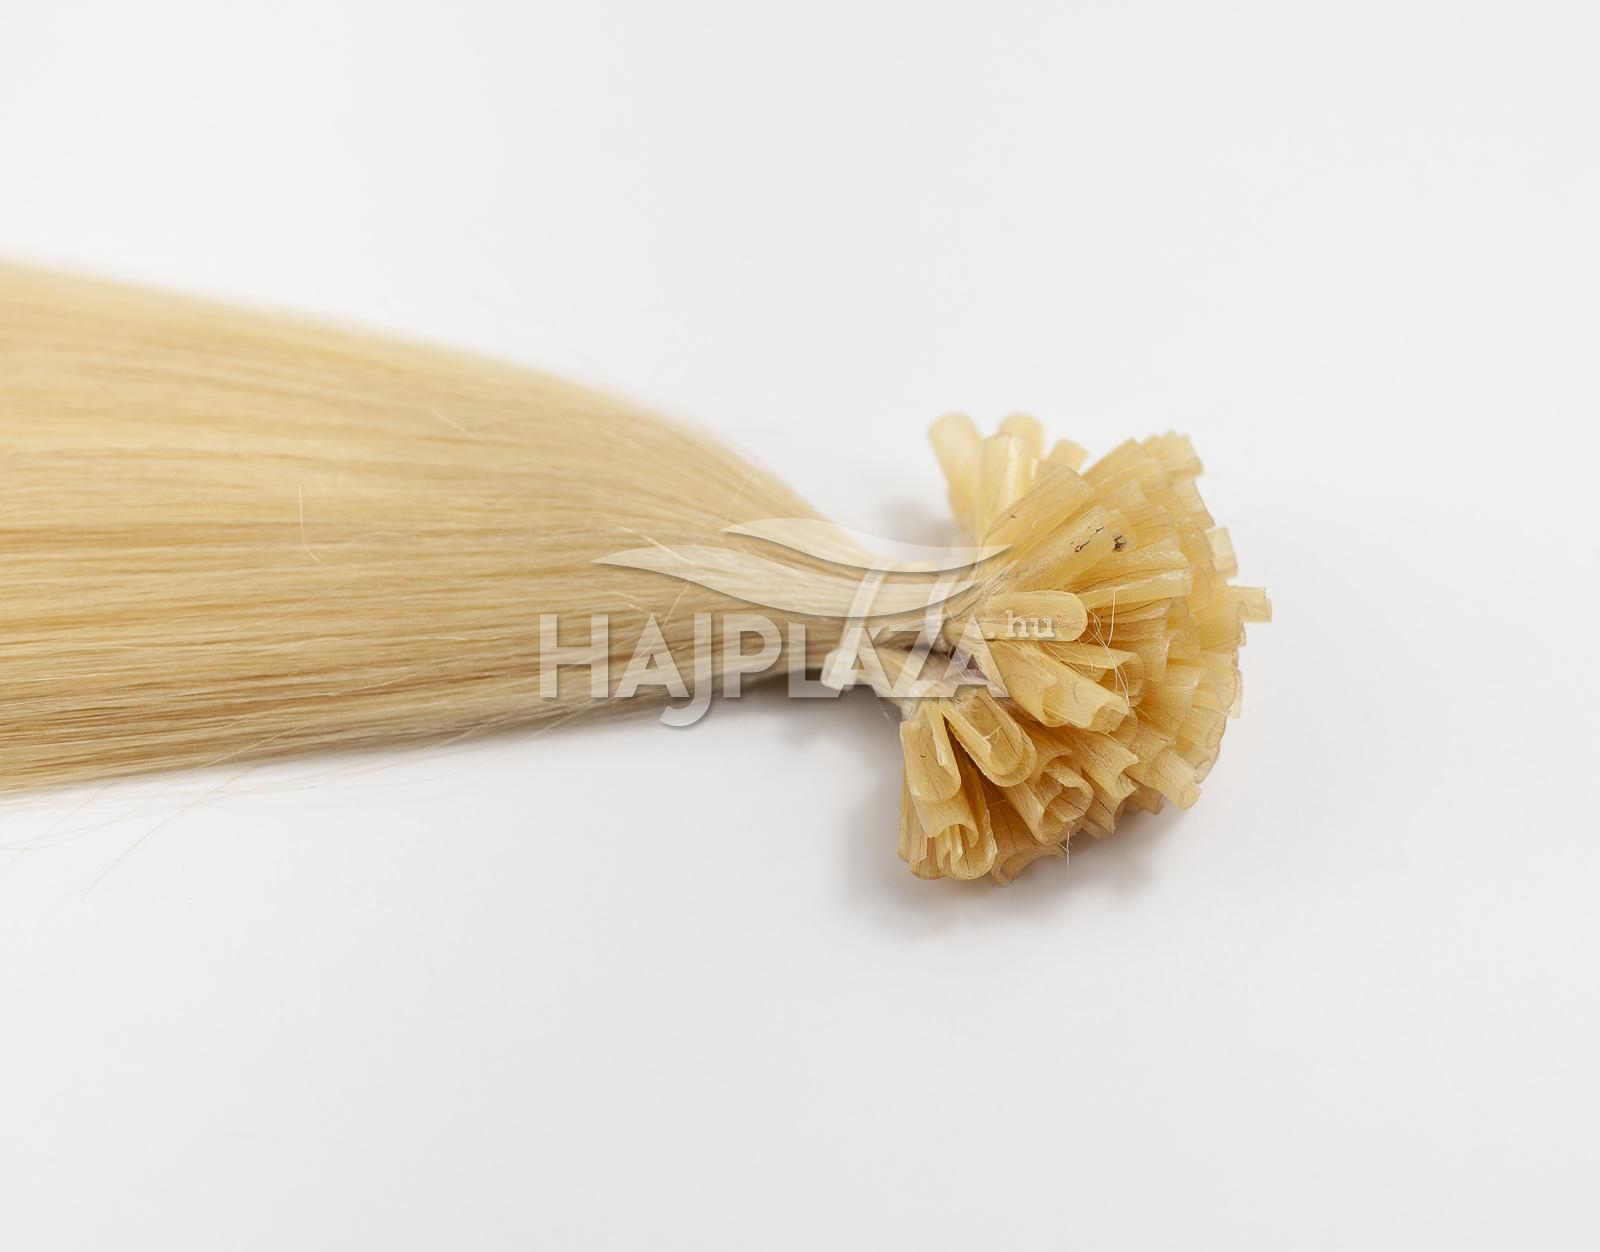 Festett világosszőke keratinos haj - 50-55 cm